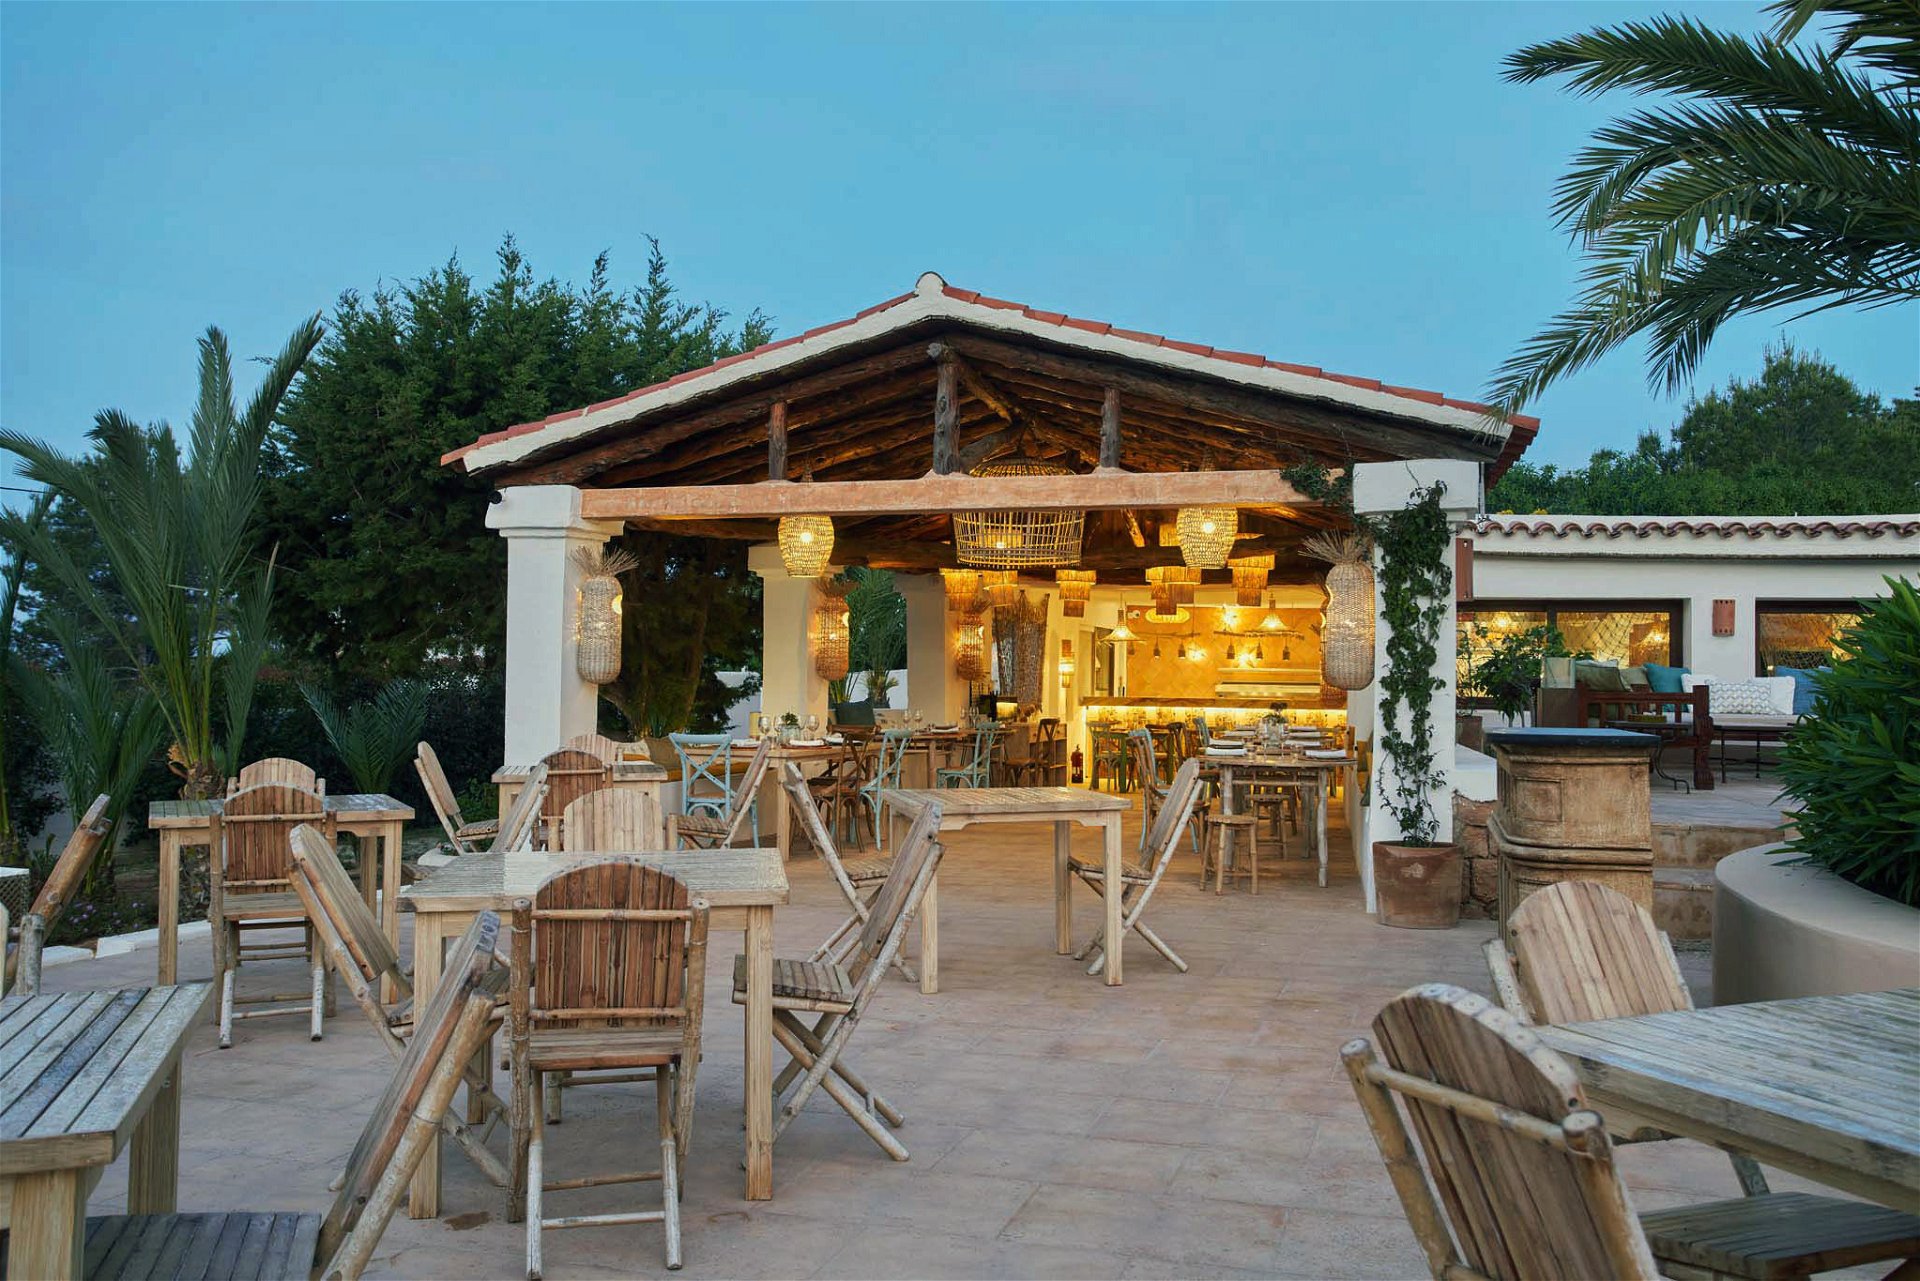 Up and coming: Das »Los Olivos« ist eines von zwei Restaurants des erst kürzlich als Beaumier-Boutiquehotel wieder eröffneten Hotels »Petunia« auf Ibiza. Mit seiner Open-Air-Atmosphäre und dem Blick auf den schicken Pool verspricht es entspannte Nachmittage und Abende bei traditioneller mediterraner Küche. petuniaibiza.com